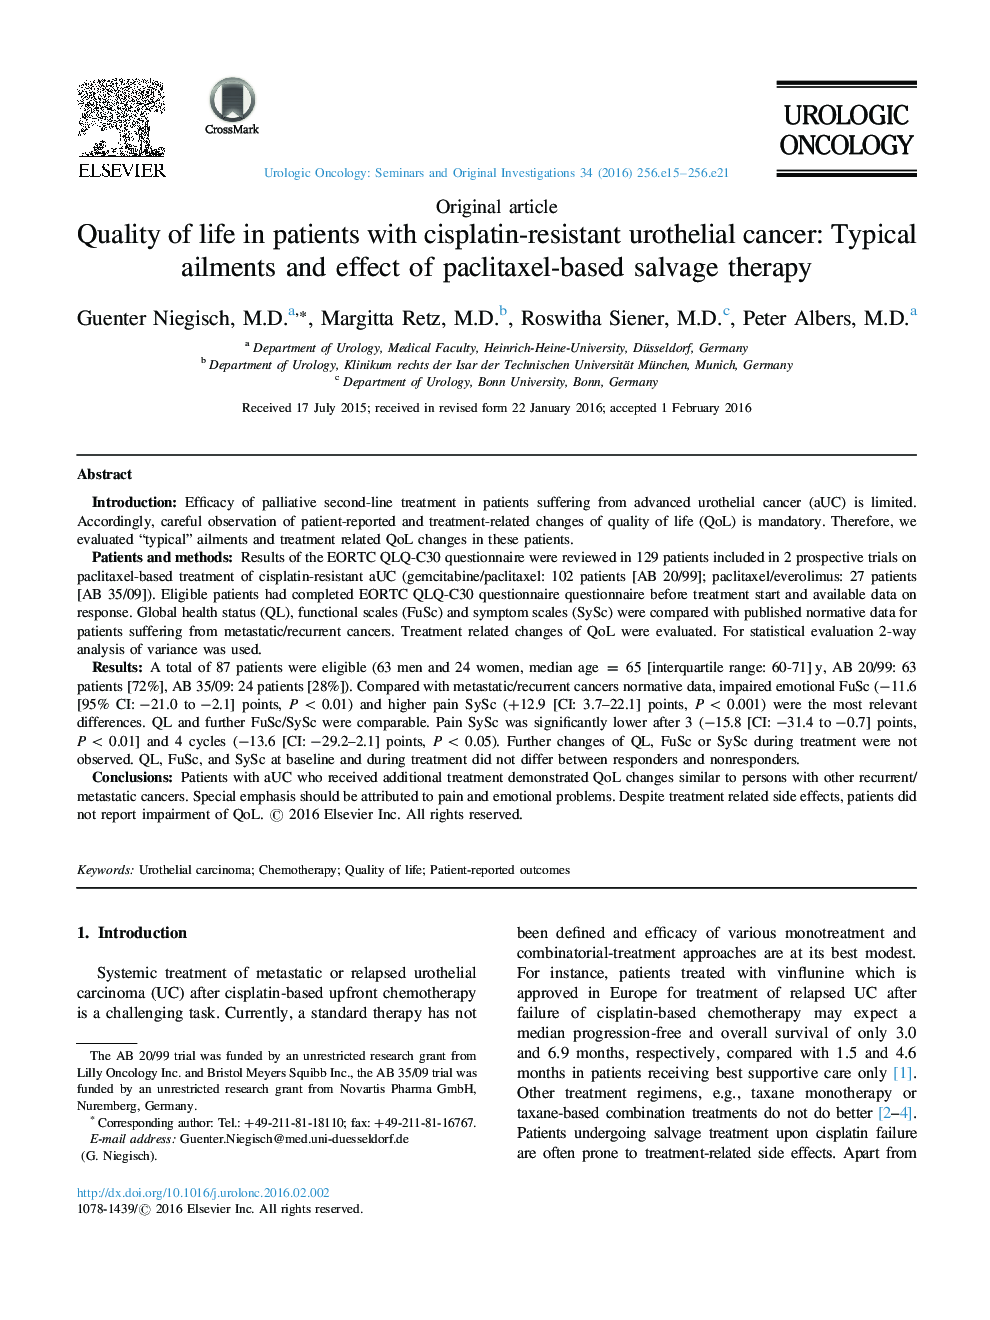 کیفیت زندگی بیماران مبتلا به سرطان سرولوئید مقاوم به سیس پلاتین: بیماری های طبیعی و تاثیر درمان جایگزین مبتنی بر پلاکتکسل 